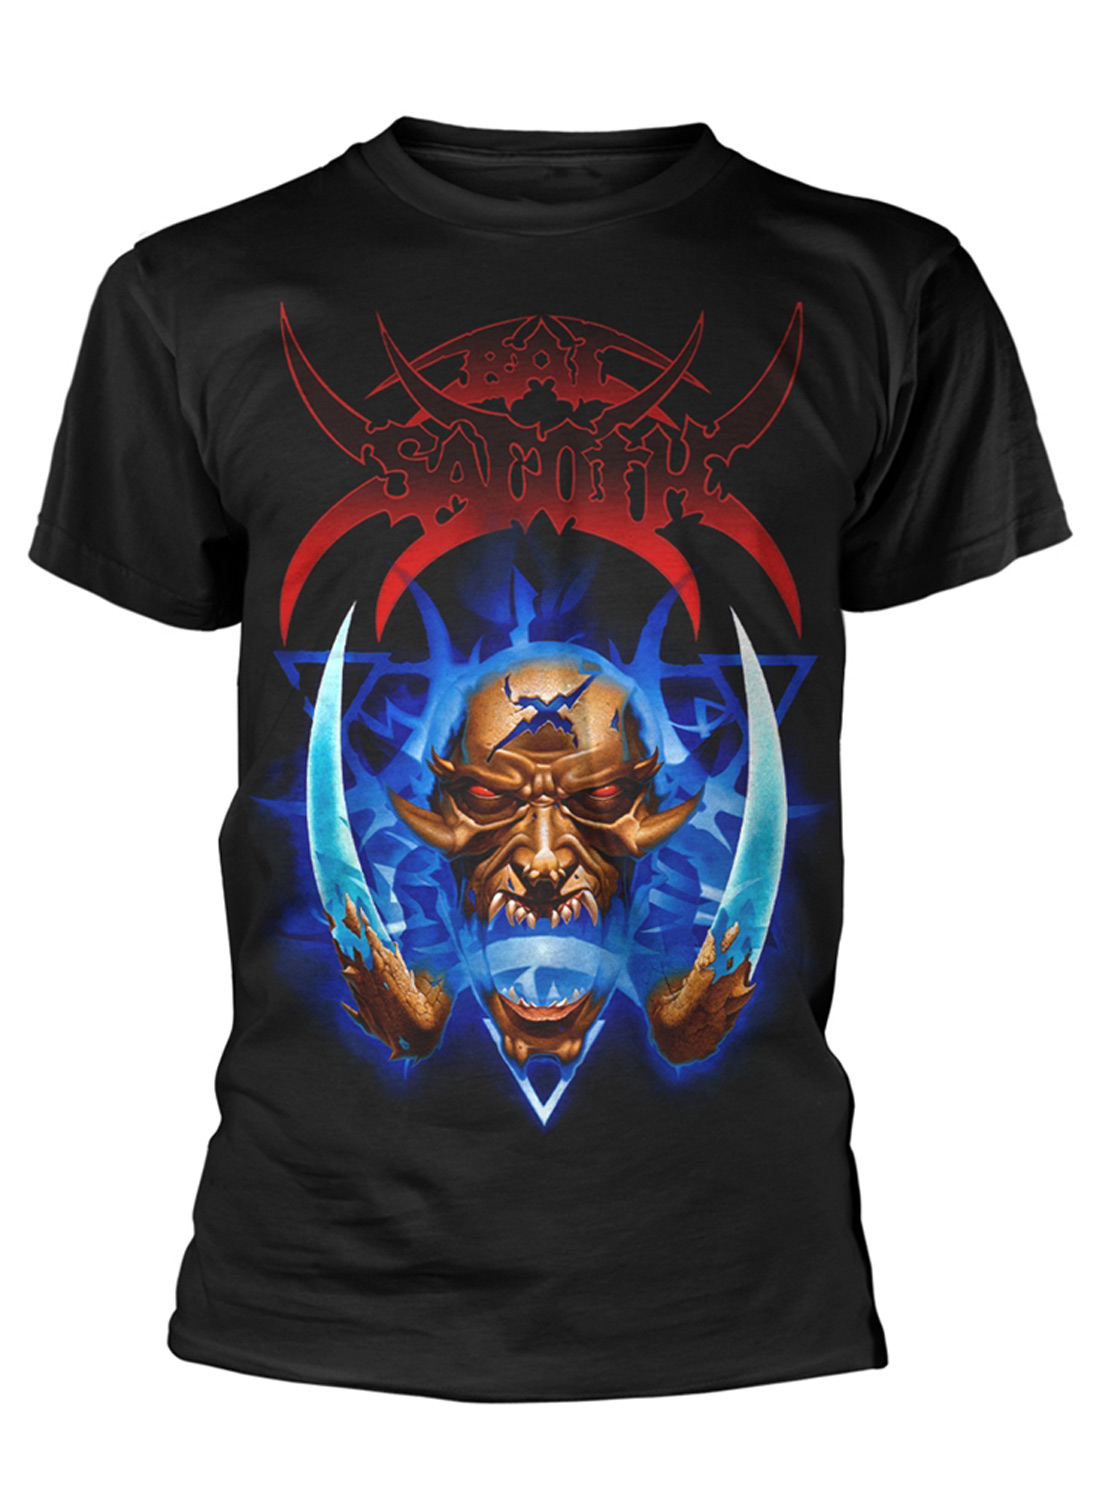 Bal-Sagoth Demon T-Shirt